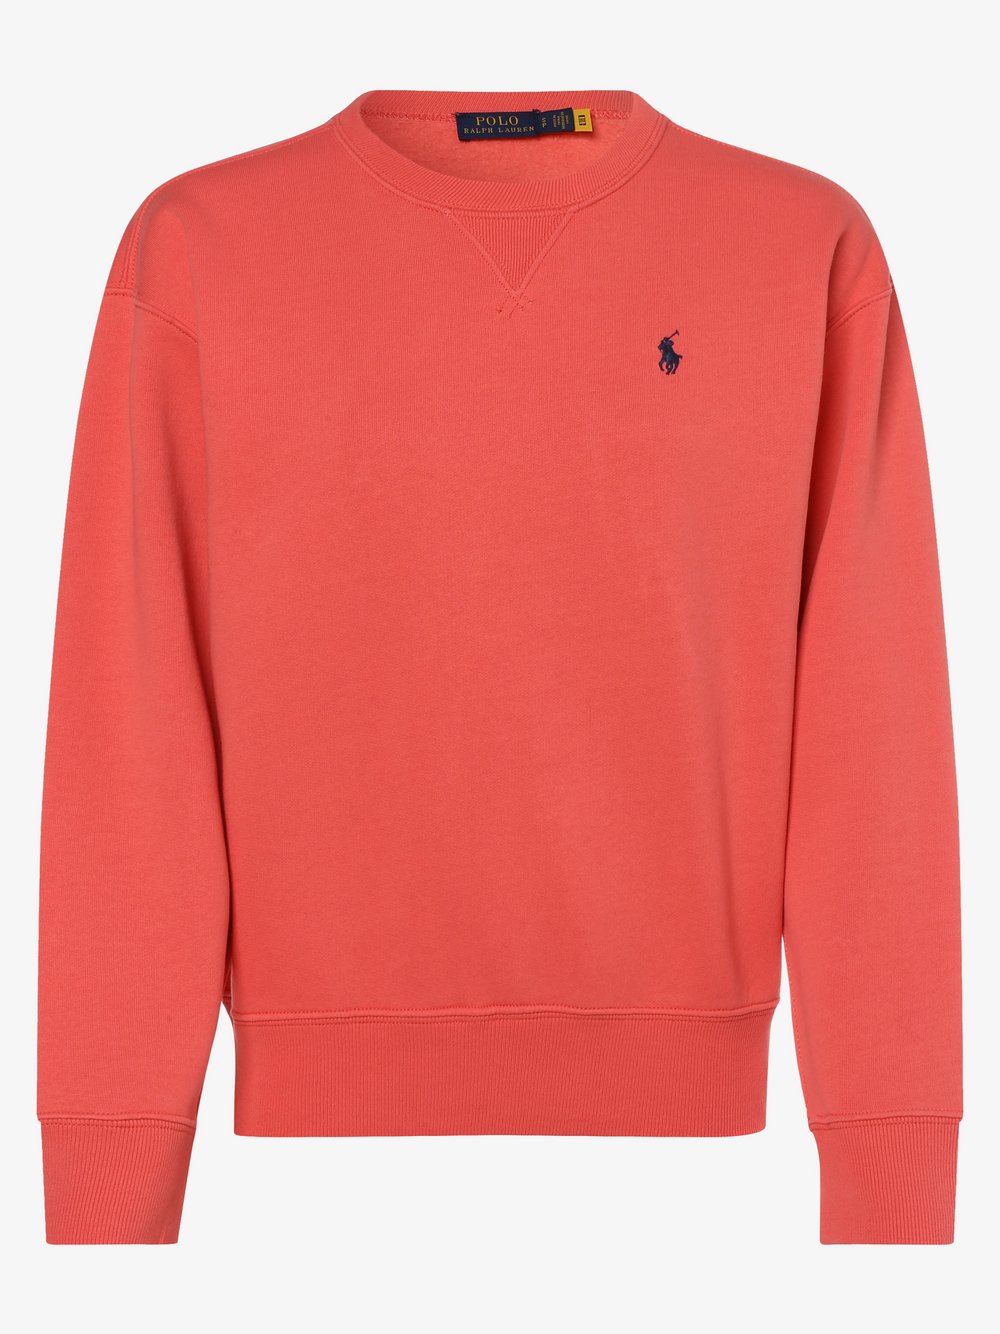 Polo Ralph Lauren - Damska bluza nierozpinana, czerwony